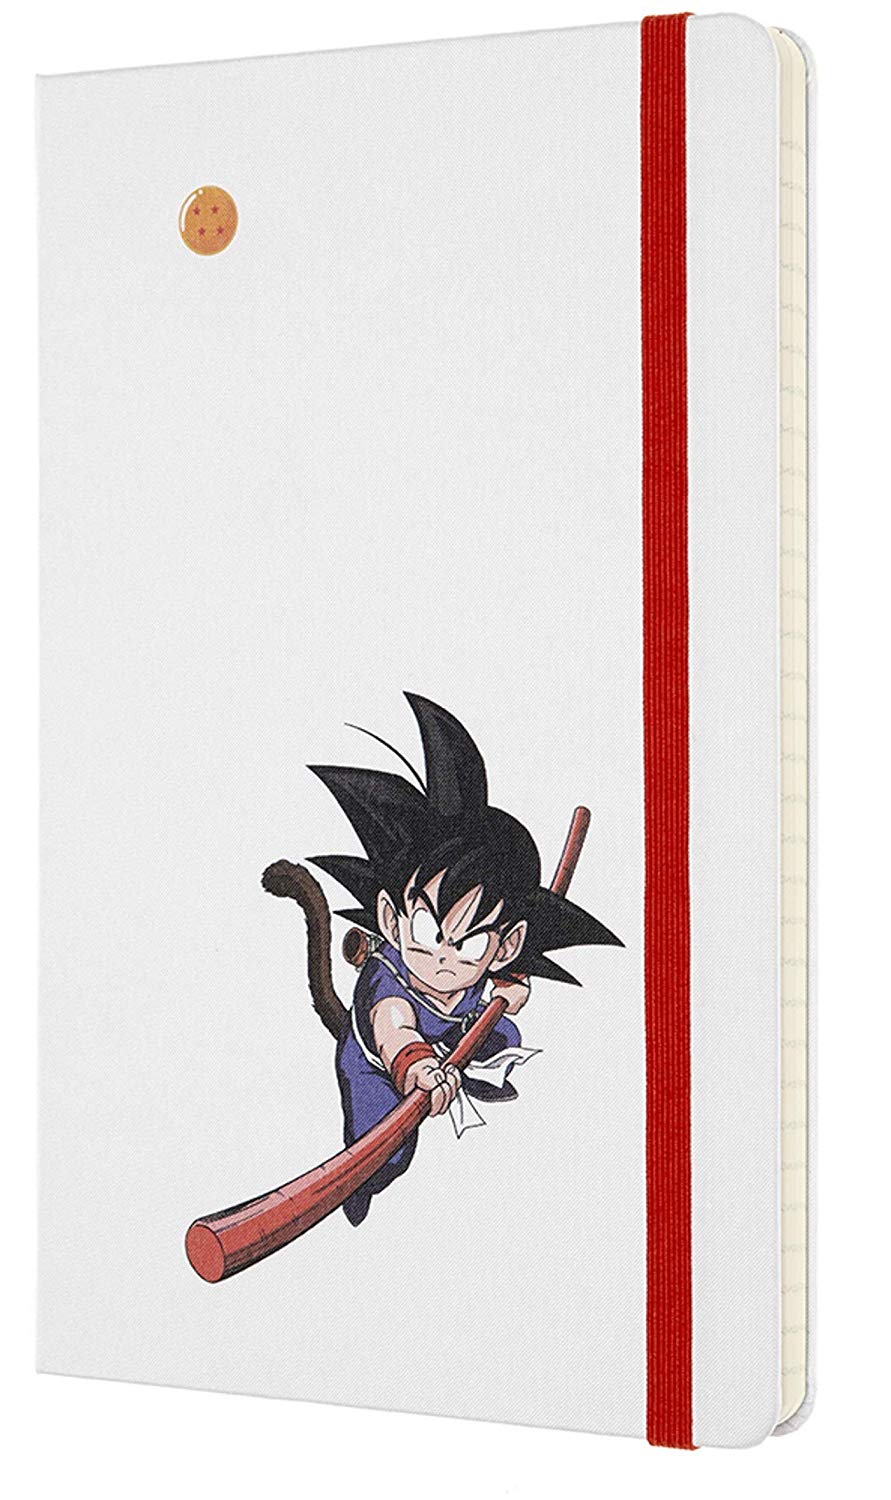 Carnet - Moleskine Dragonball Limited Edition Ruled Notebook - Large, Hard Cover, White - Goku | Moleskine